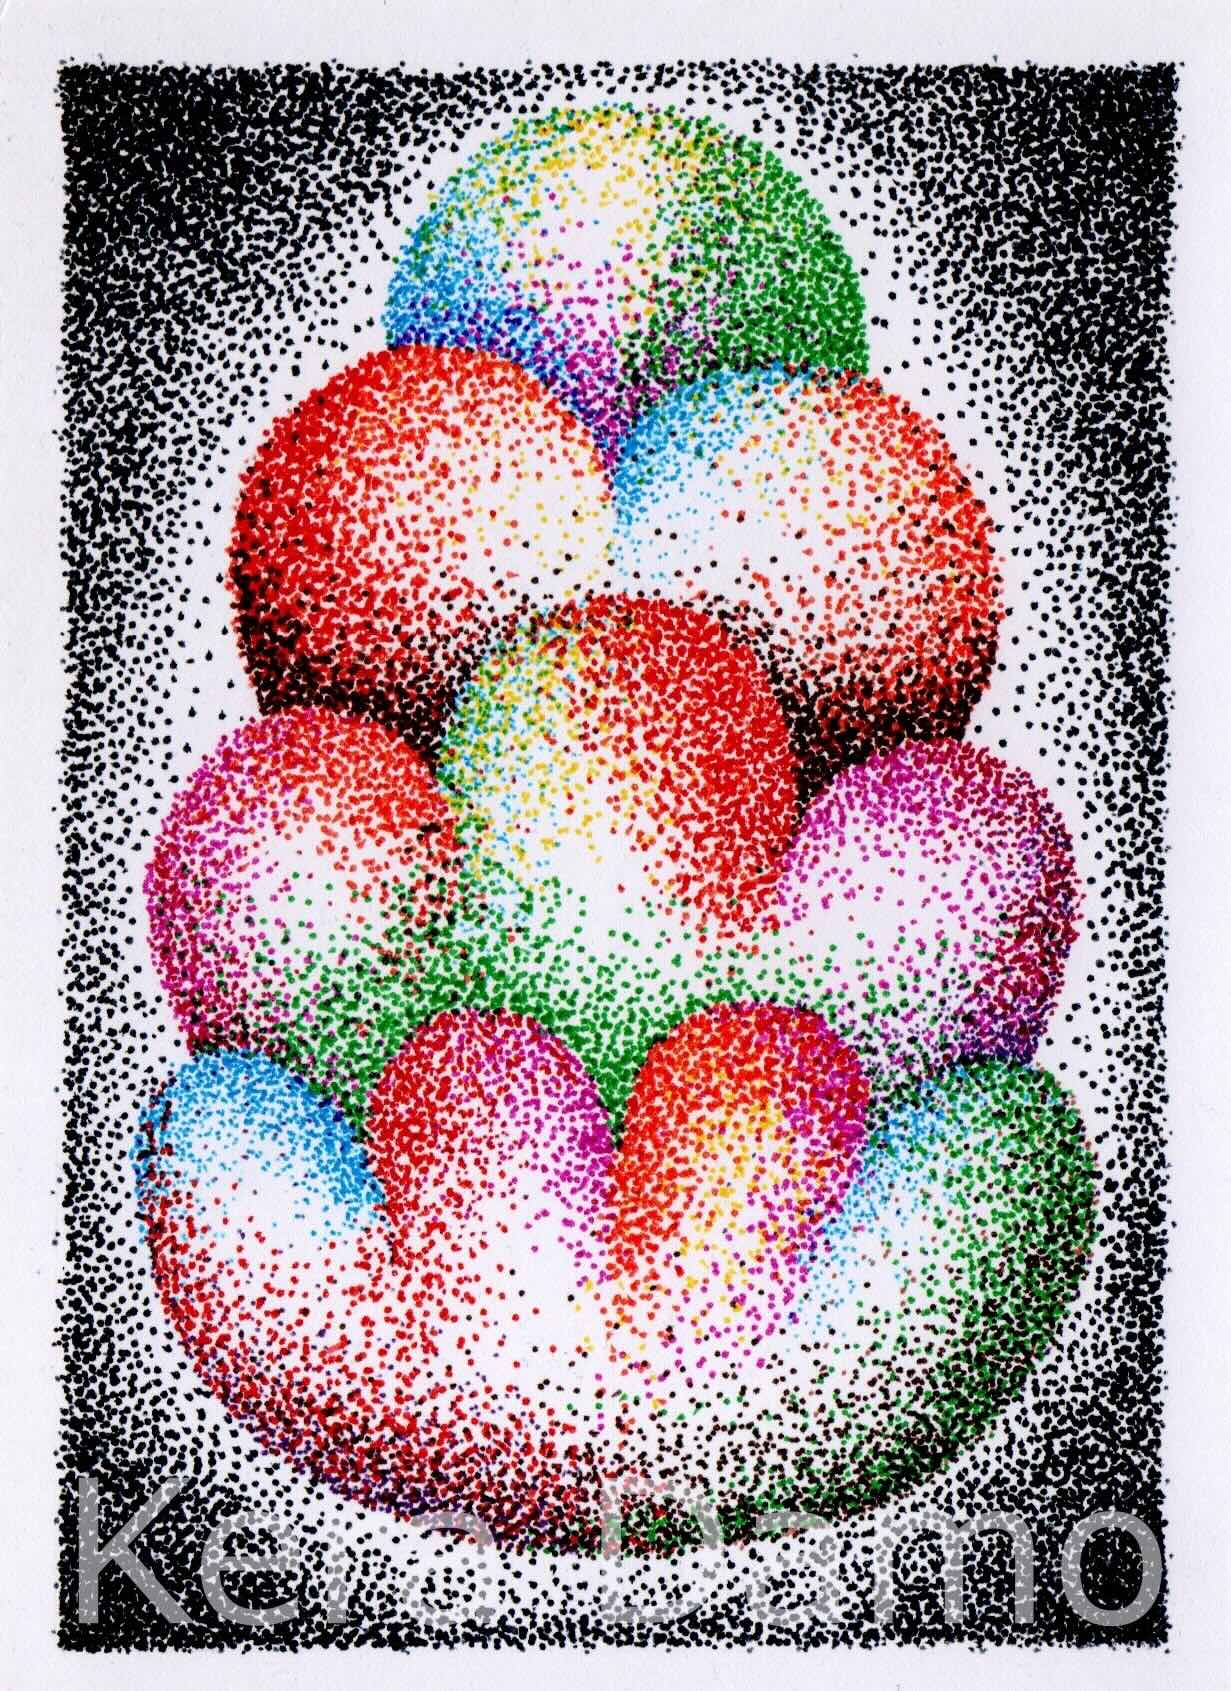 A multicolour pen drawing as part of the Jippie Stippie series, made by visual artist Kera Damo from the Hague / Een meerkleurige pentekening als onderdeel van de Jippie Stippie serie, gemaakt door beeldend kunstenaar Kera Damo uit Den Haag